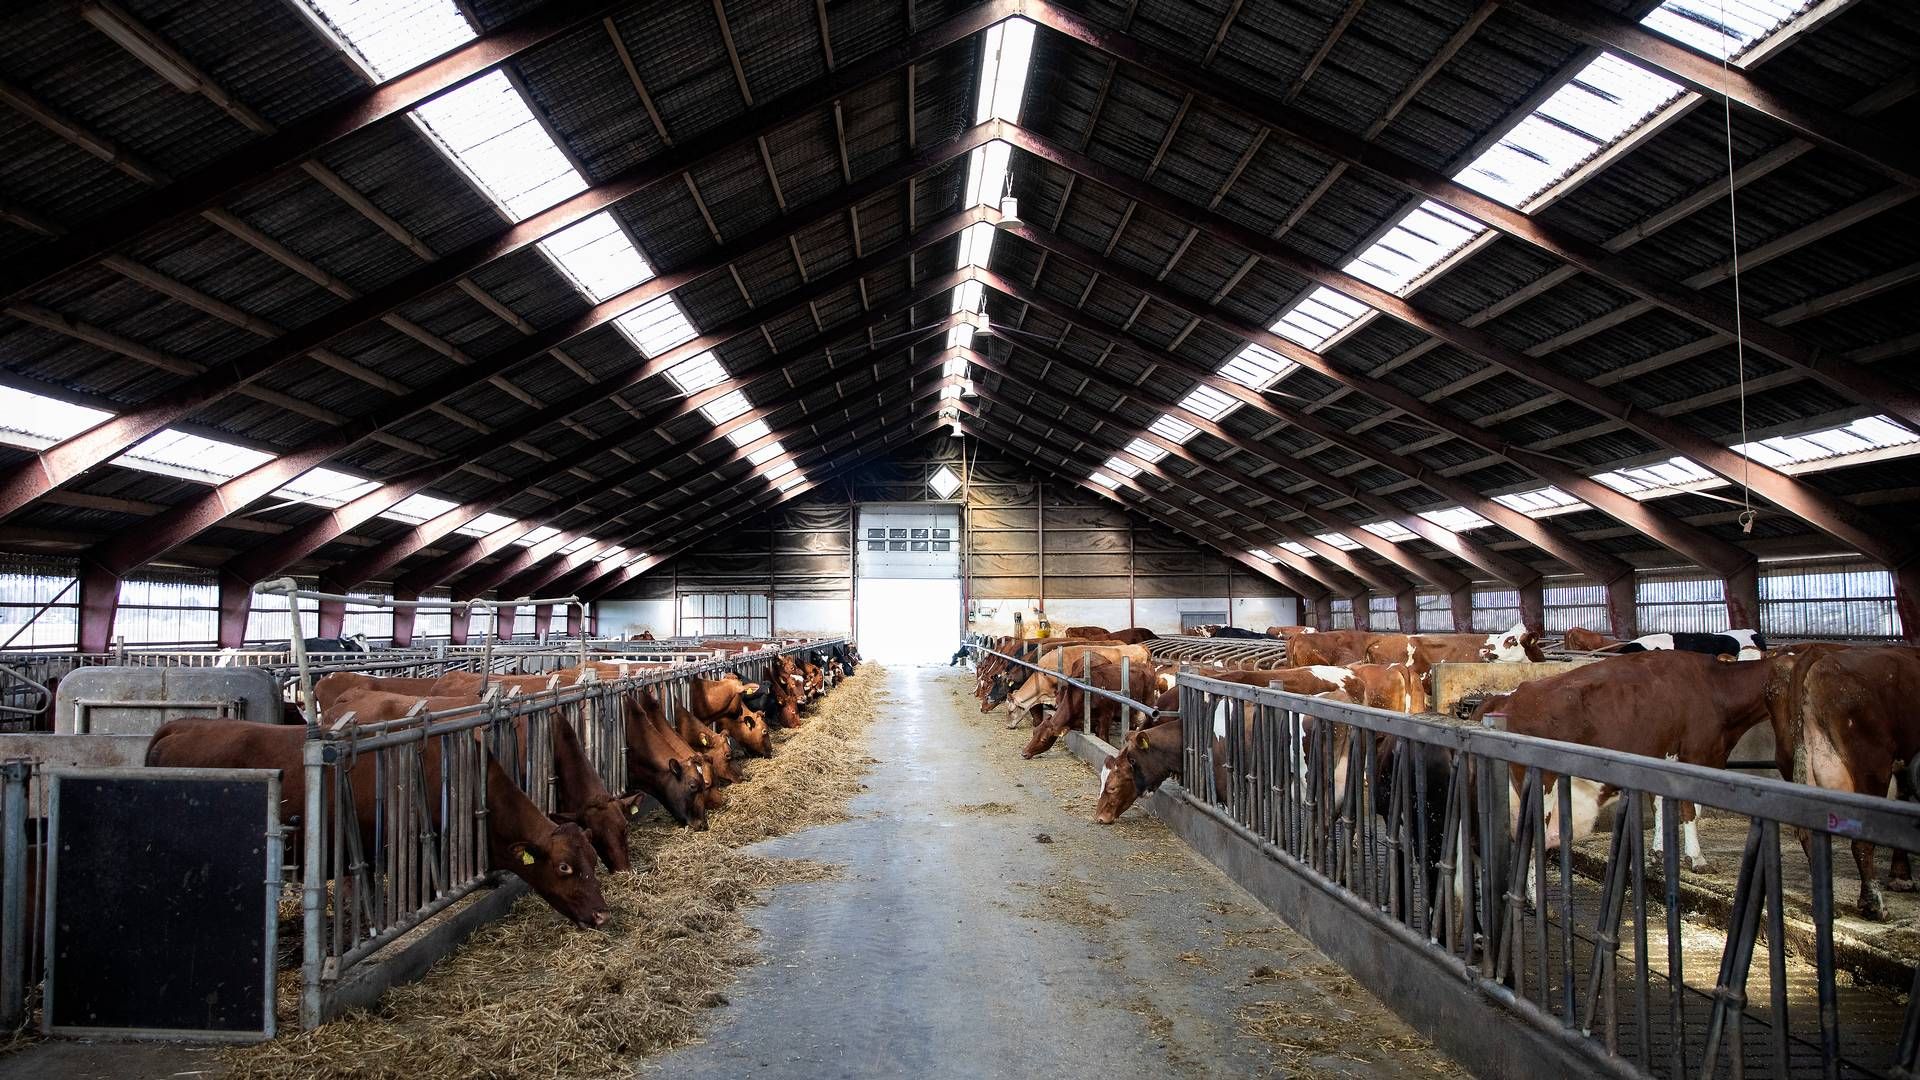 Kvægeksporten skal dirigeres væk fra Rusland, og det er blevet nemmere med købet af eksportstaldende i Kolding, fortæller Anders Levring. Arkivfoto. | Foto: Finn Frandsen